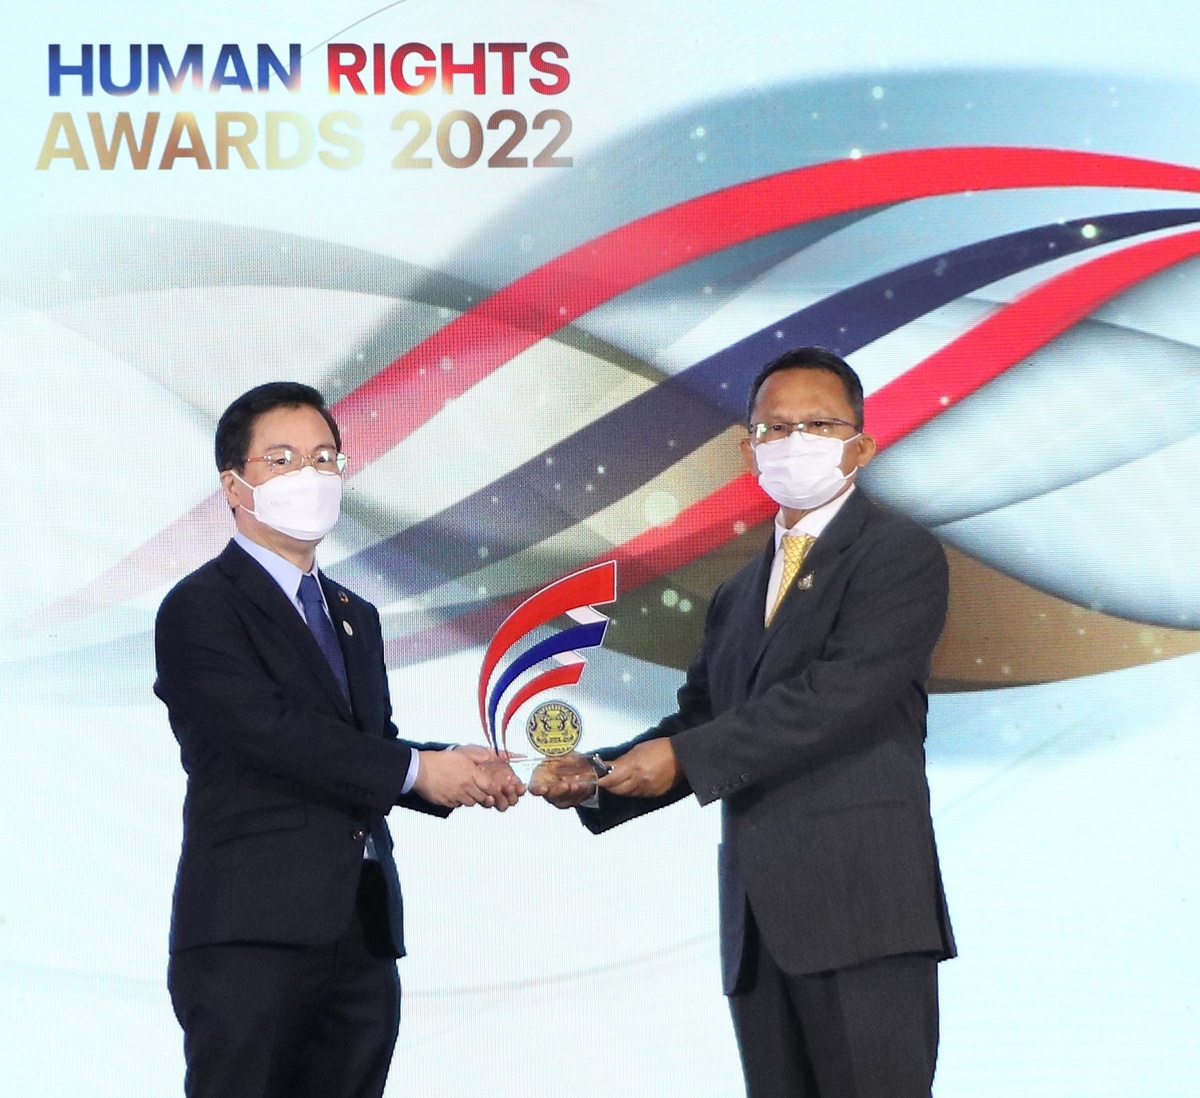 กลุ่มมิตรผล ก้าวสู่การเป็นองค์กรต้นแบบด้านสิทธิมนุษยชน รับรางวัลดีเด่นประจำปี 2565 ต่อเนื่องเป็นปีที่ 3 จากกรมคุ้มครองสิทธิและเสรีภาพ